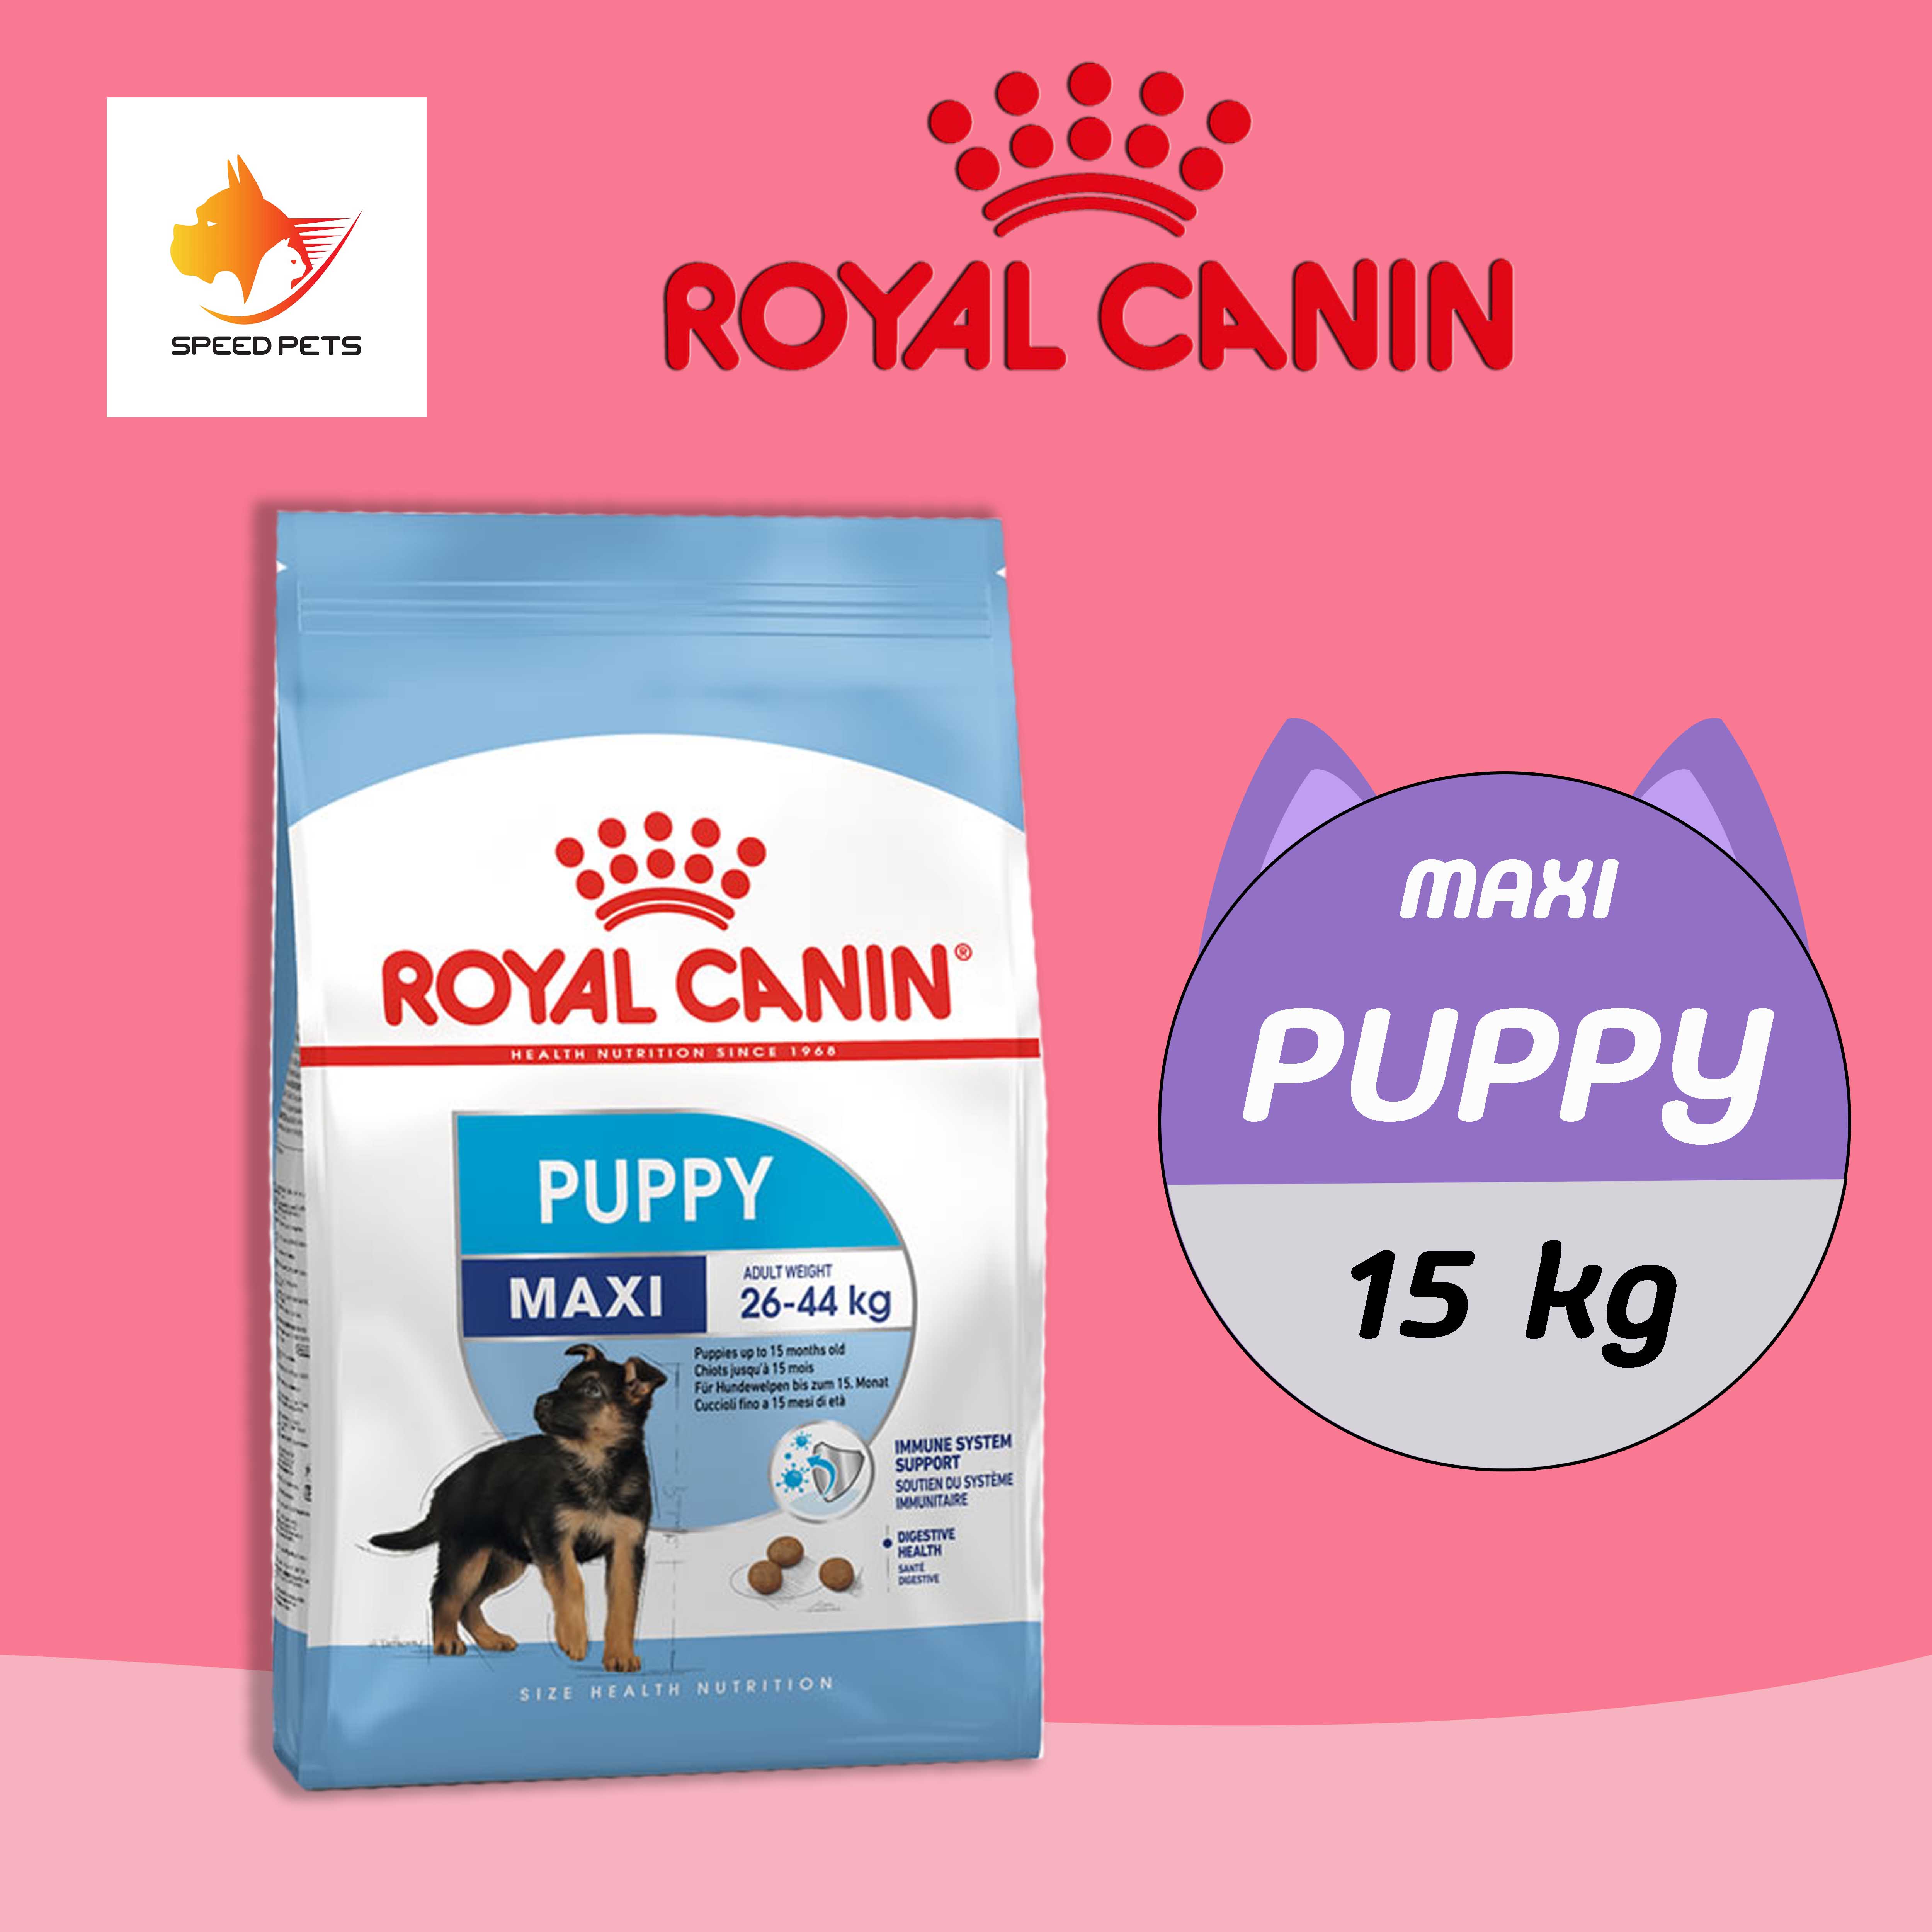 Royal Canin MAXI Puppy 15kg โรยัล คานิน อาหารลูกสุนัข พันธุ์ใหญ่ แบบเม็ด ขนาด 15 kg